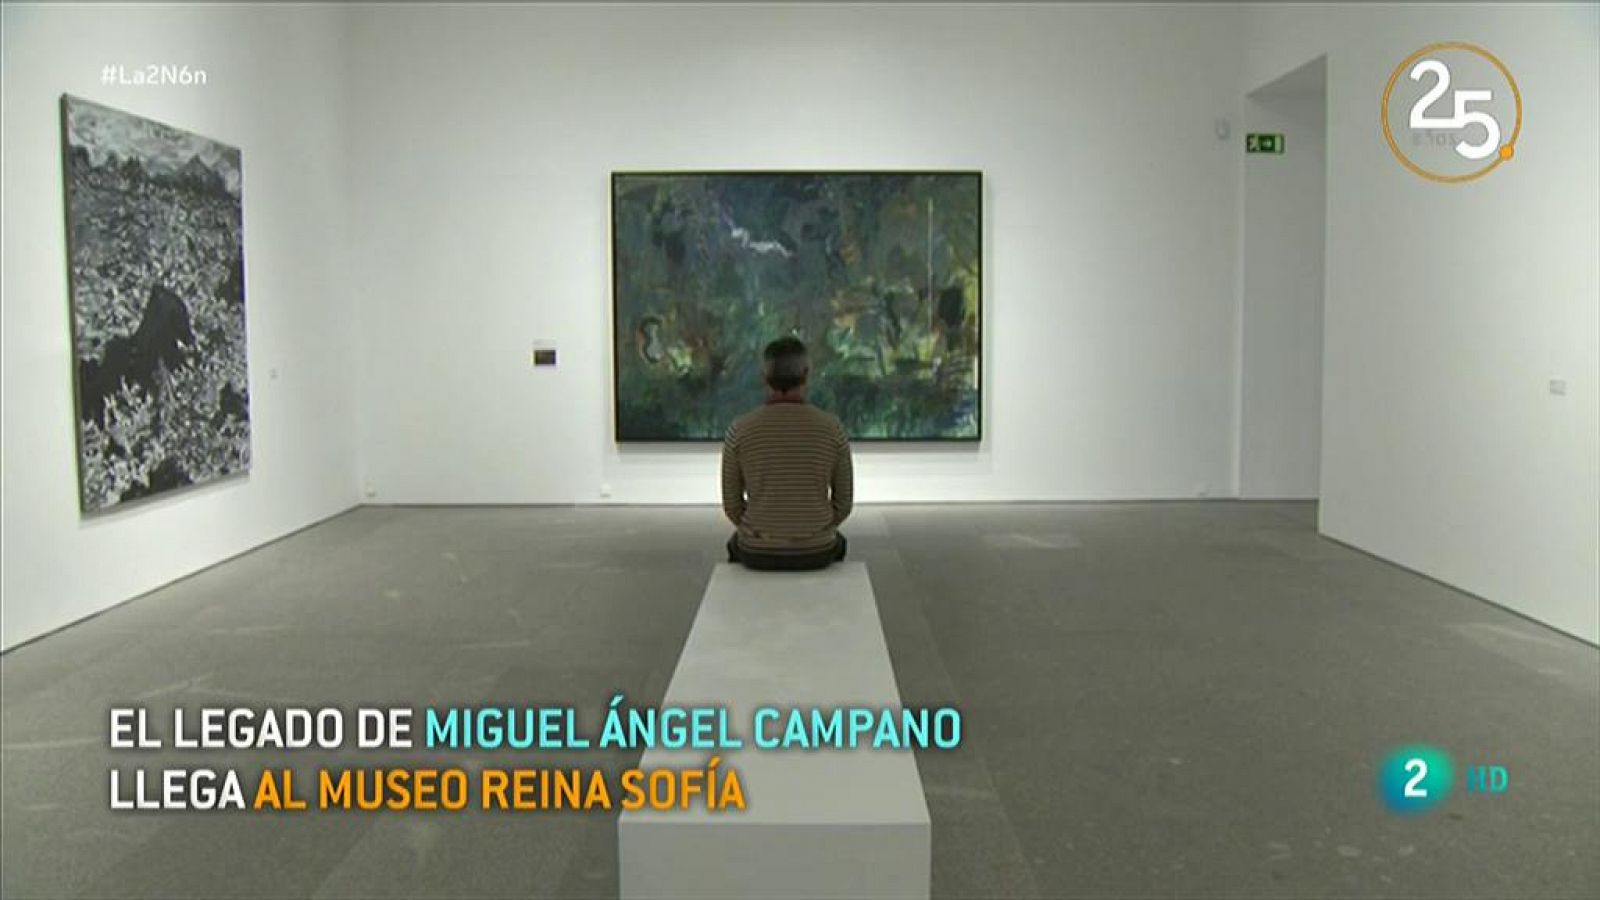 Restrospectiva al pintor Miguel Ángel Campano en el Reina Sofía